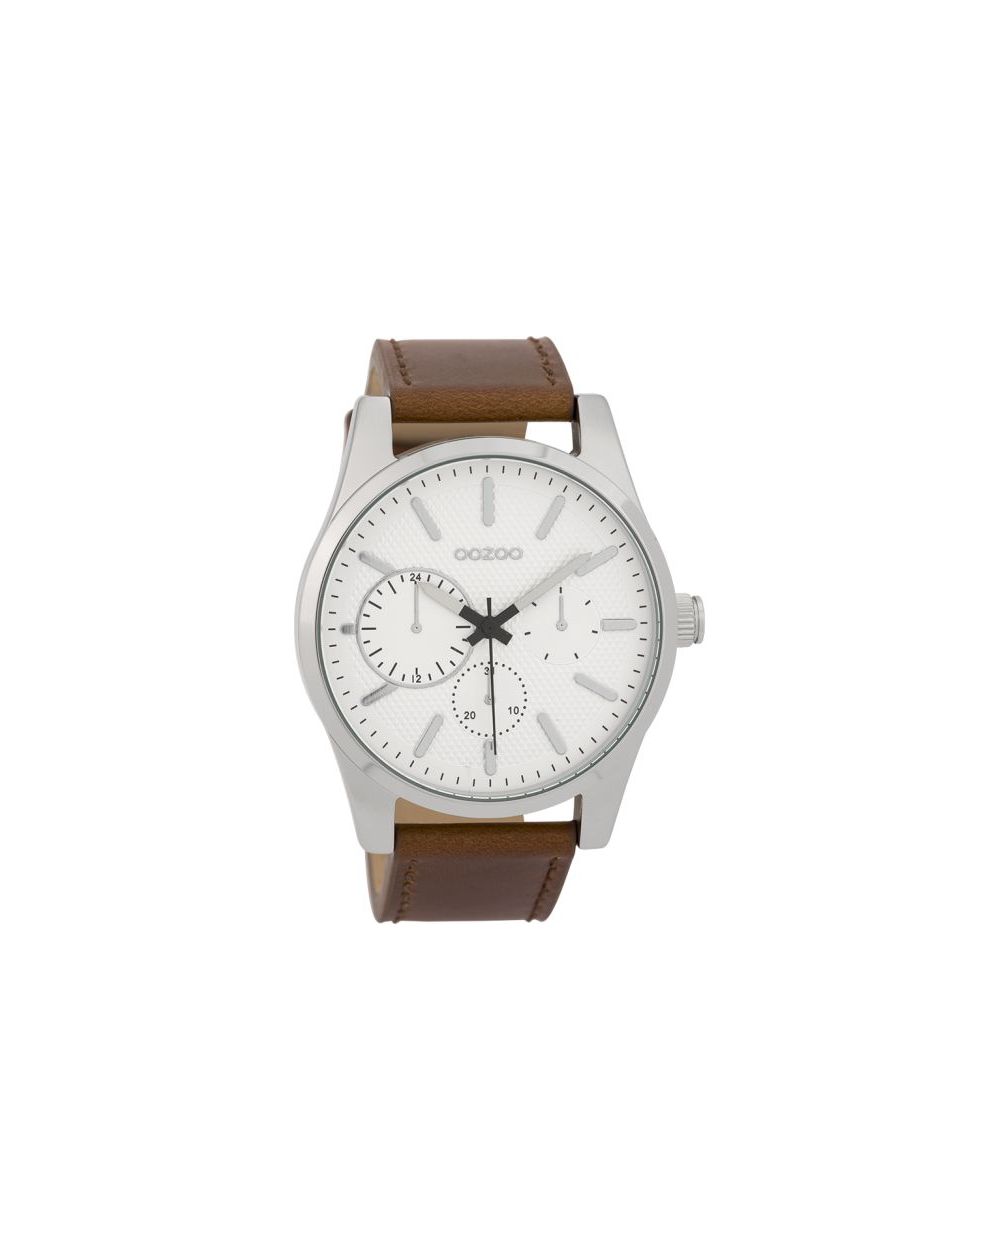 Oozoo montre/watch/horloge C9616